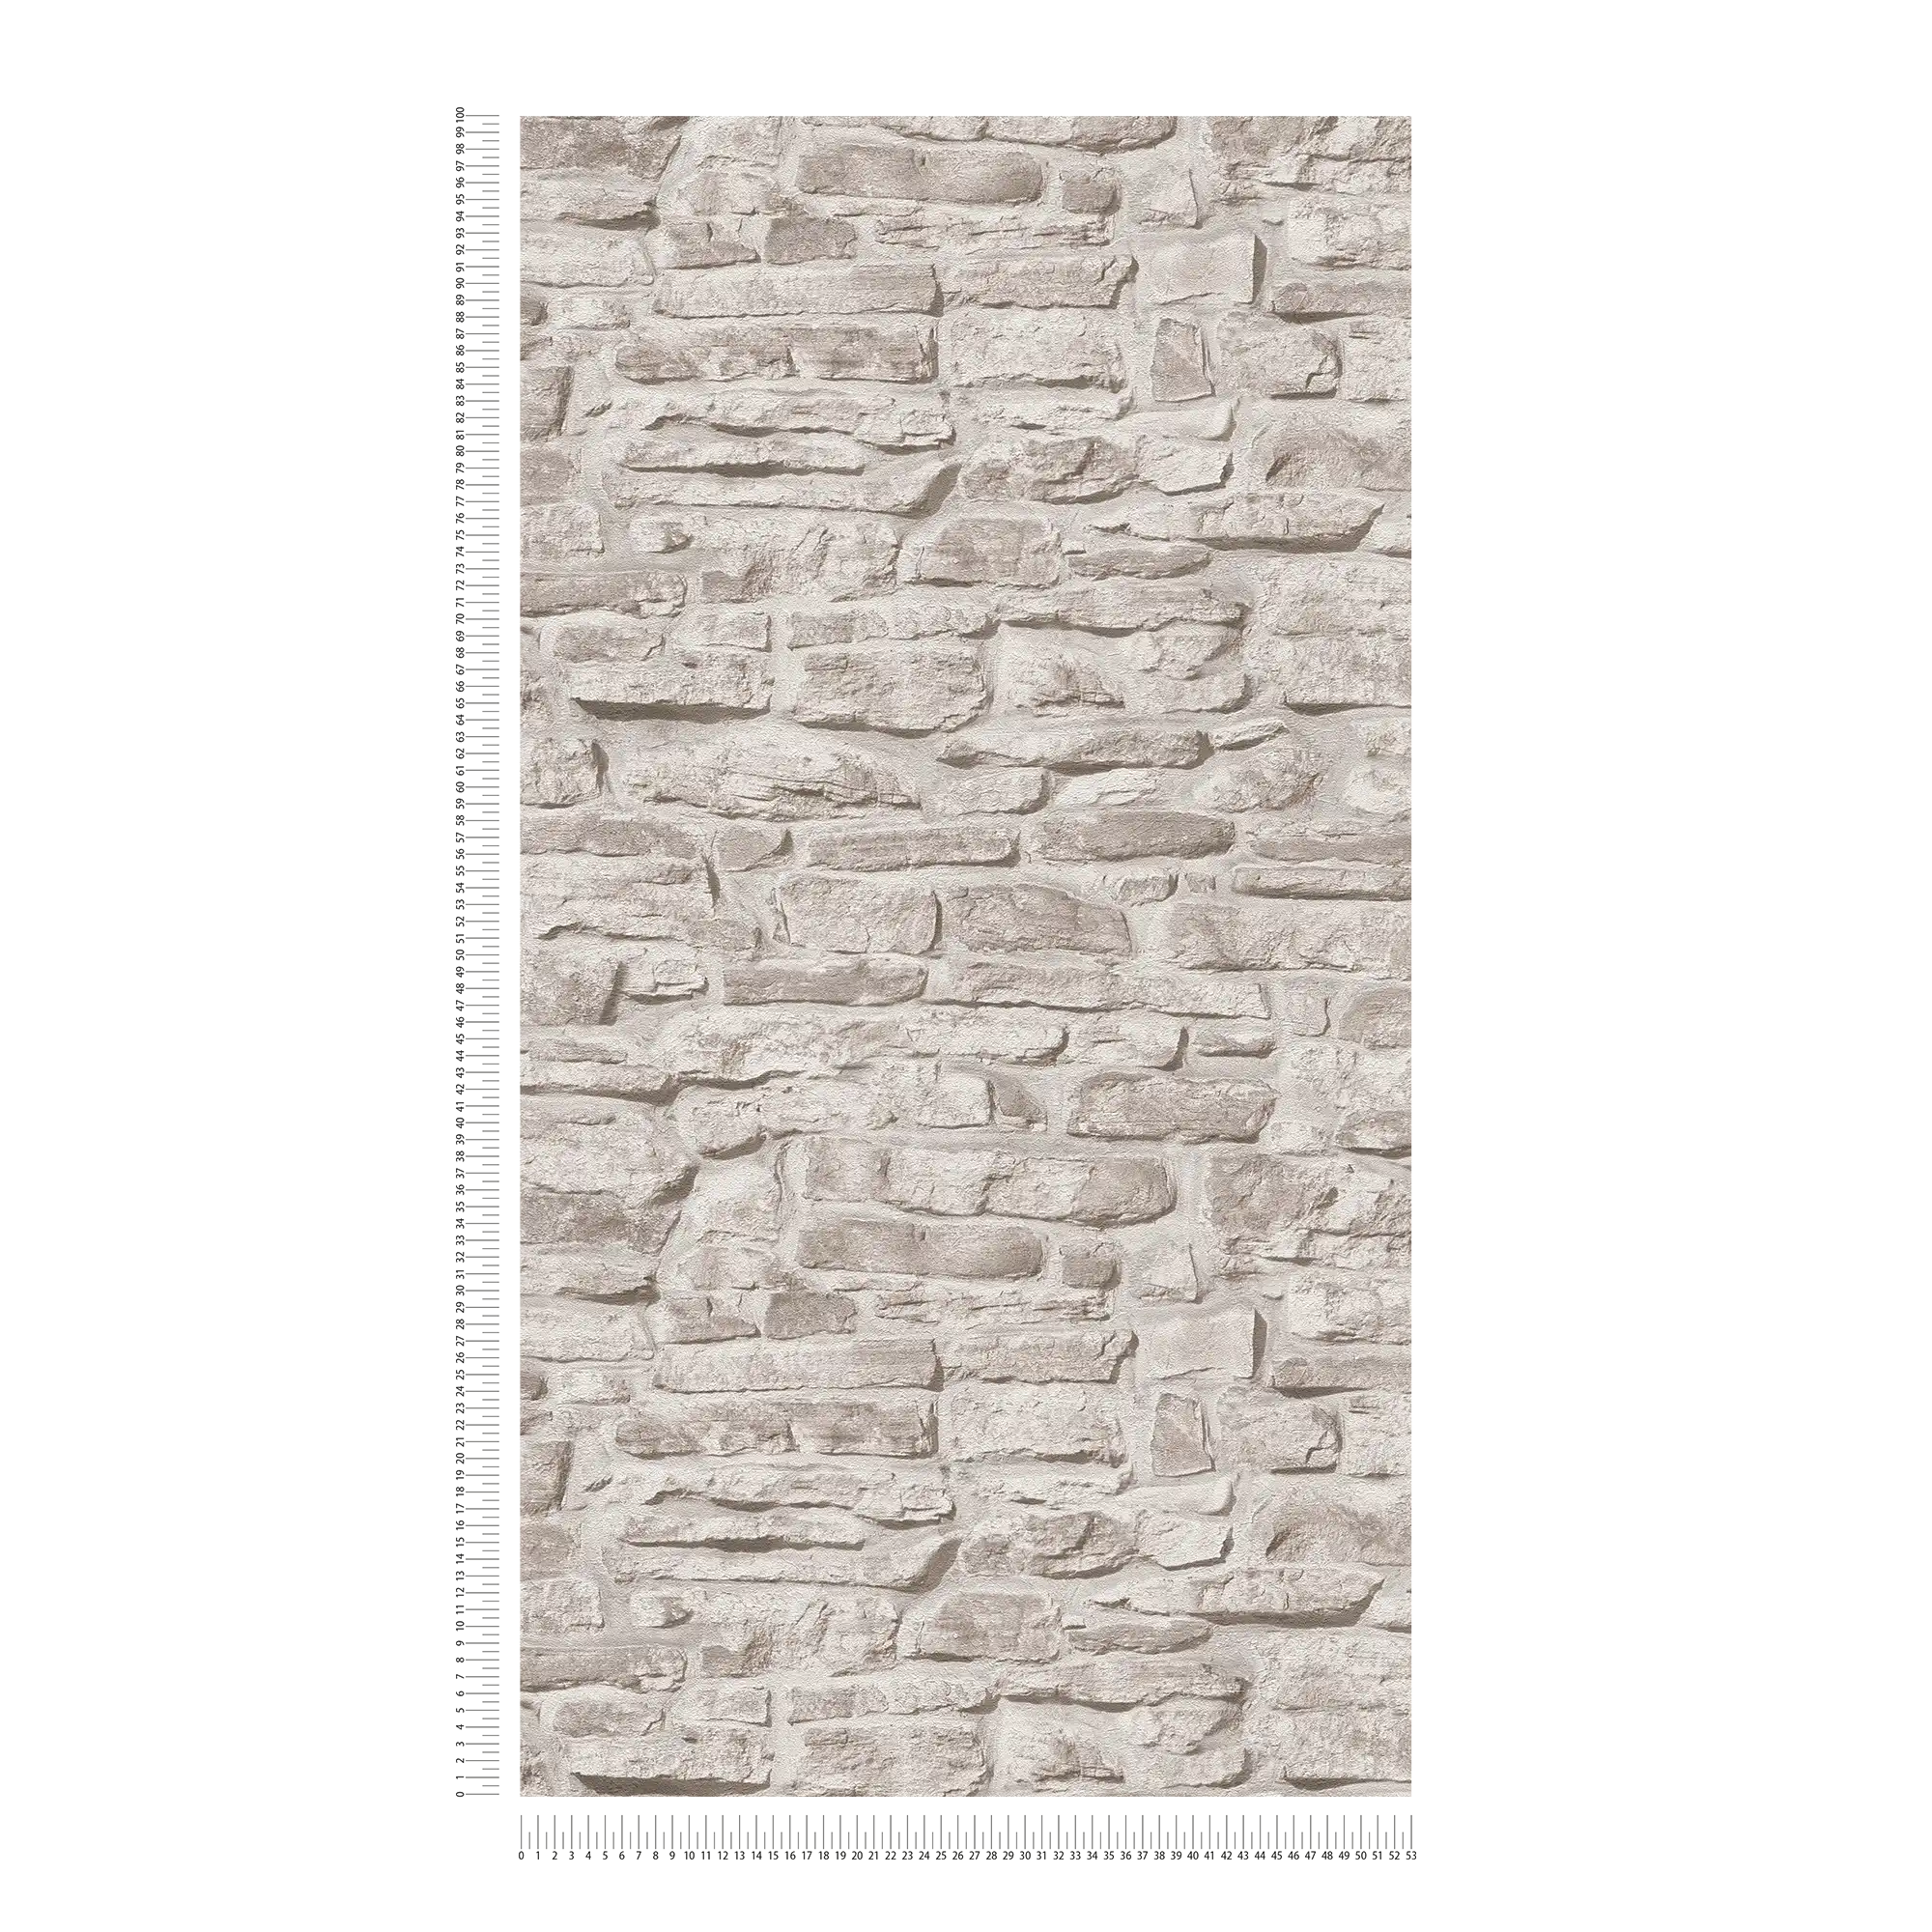             Carta da parati non tessuta effetto pietra rustica - greige, grigio, bianco
        